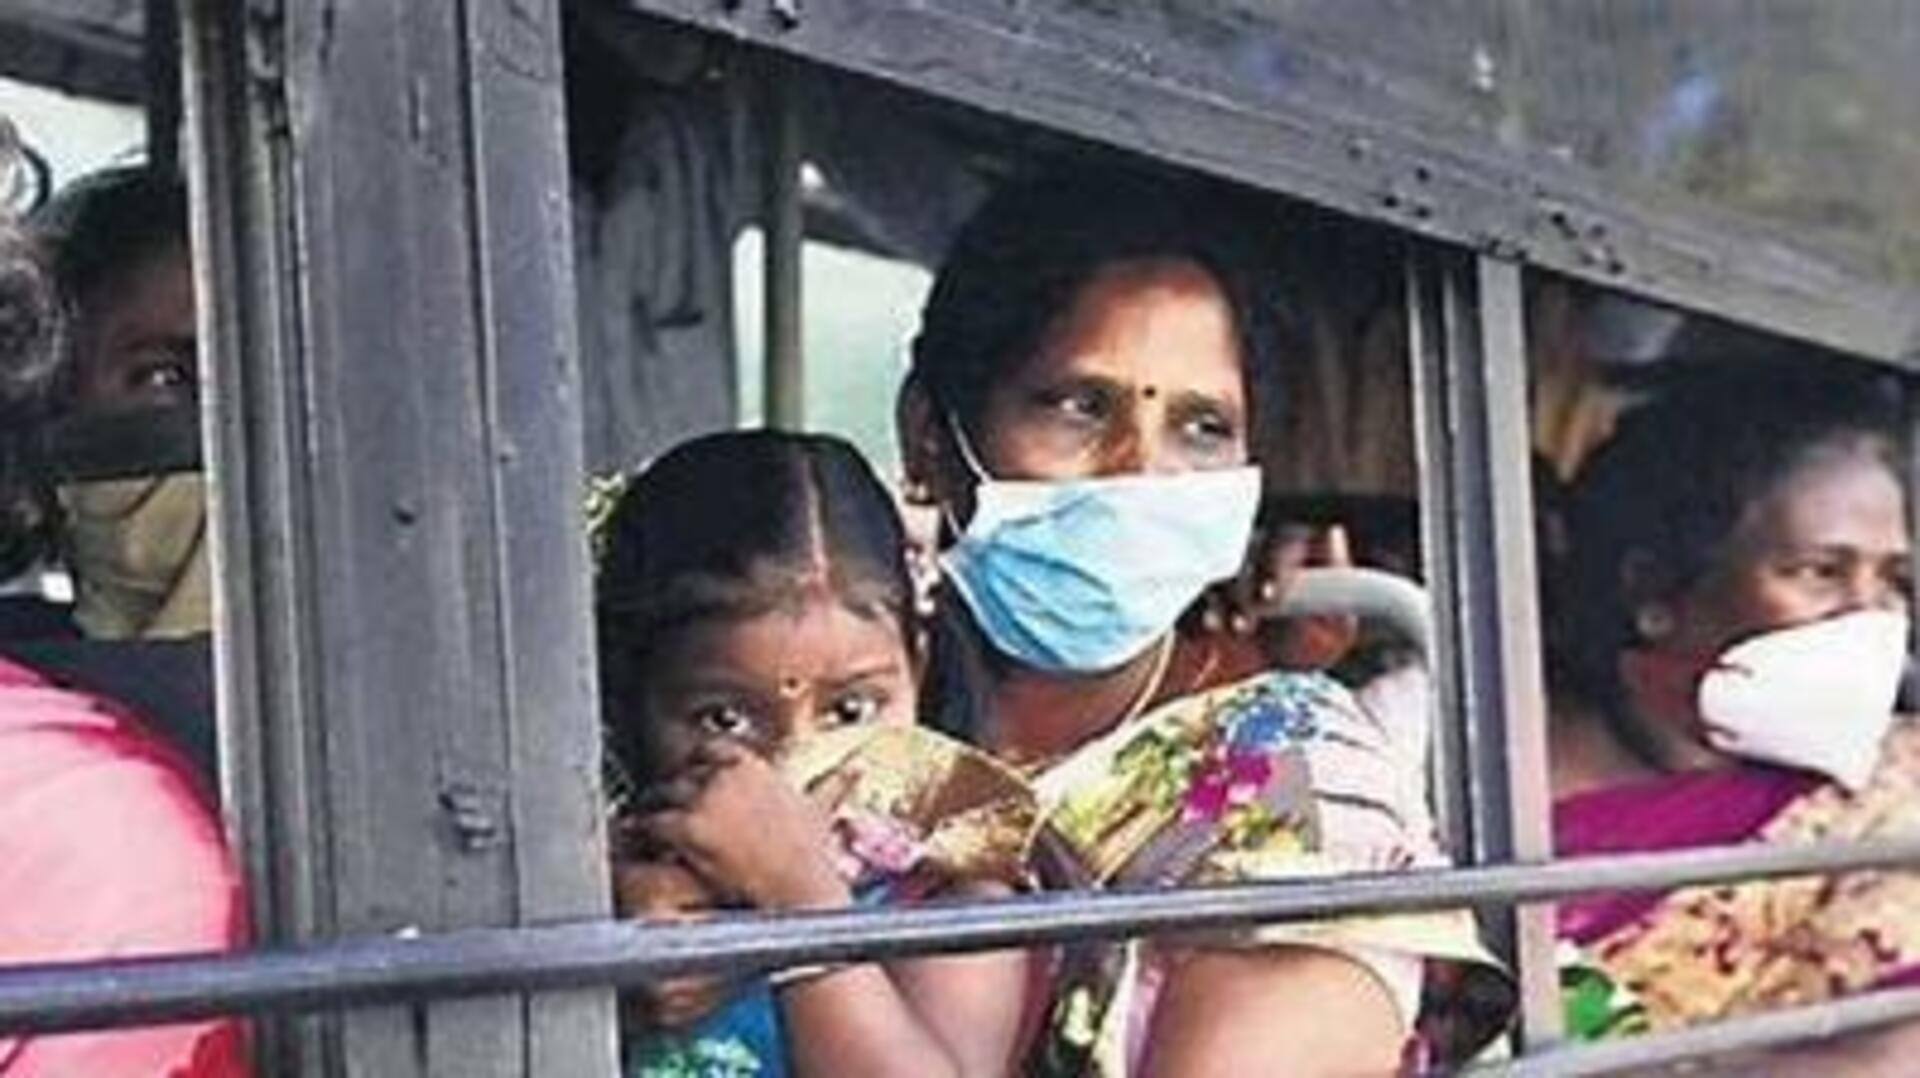 அரசு பேருந்துகளில் குழந்தைகளுக்கு 5 வயது வரை கட்டணம் இல்லை - தமிழக அரசு 